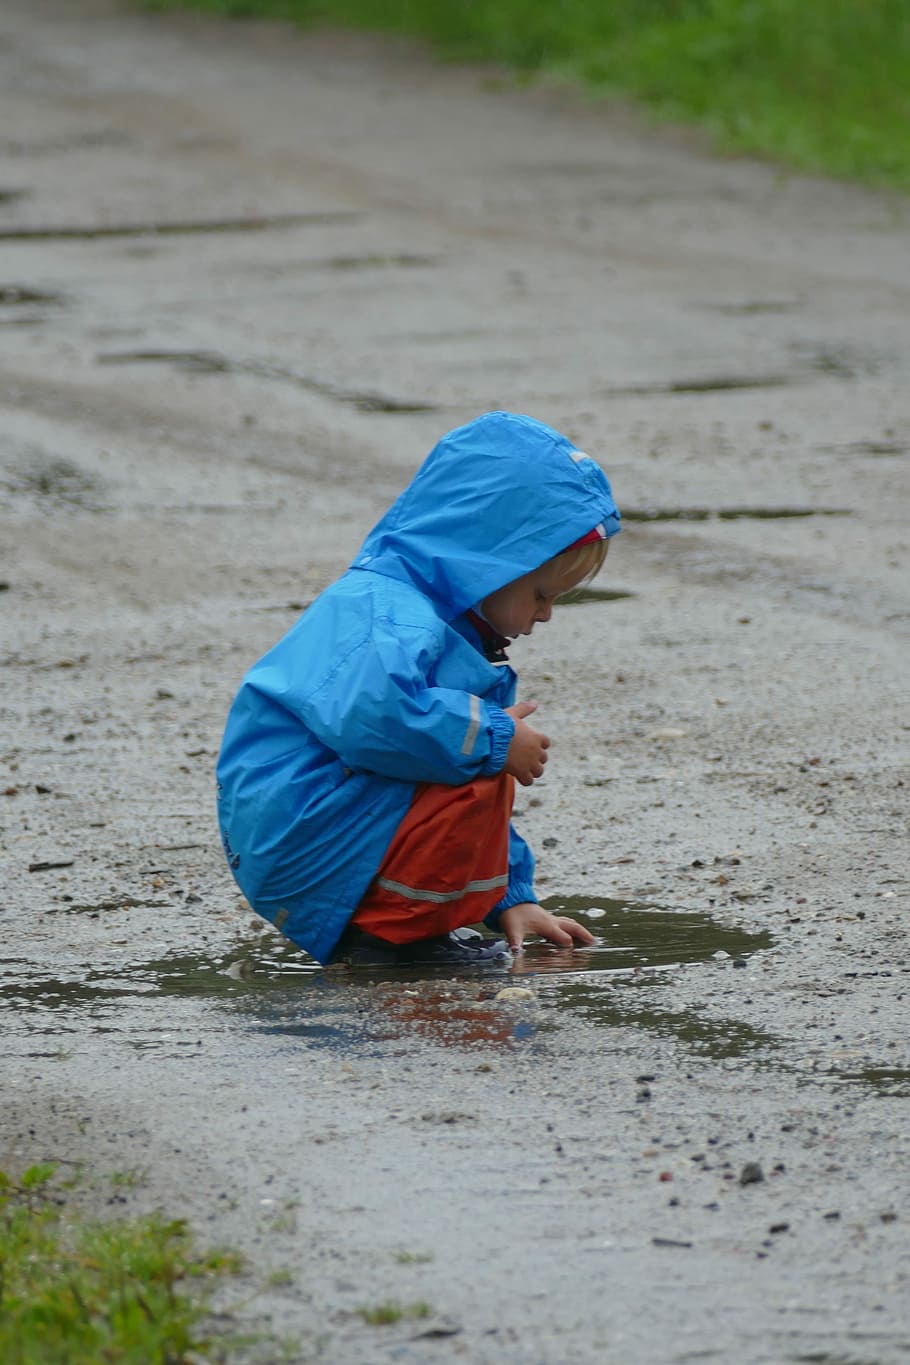 Niños jugando, Charco, lluvia, infancia, solo un niño, niños, una persona, longitud total, arena, niño